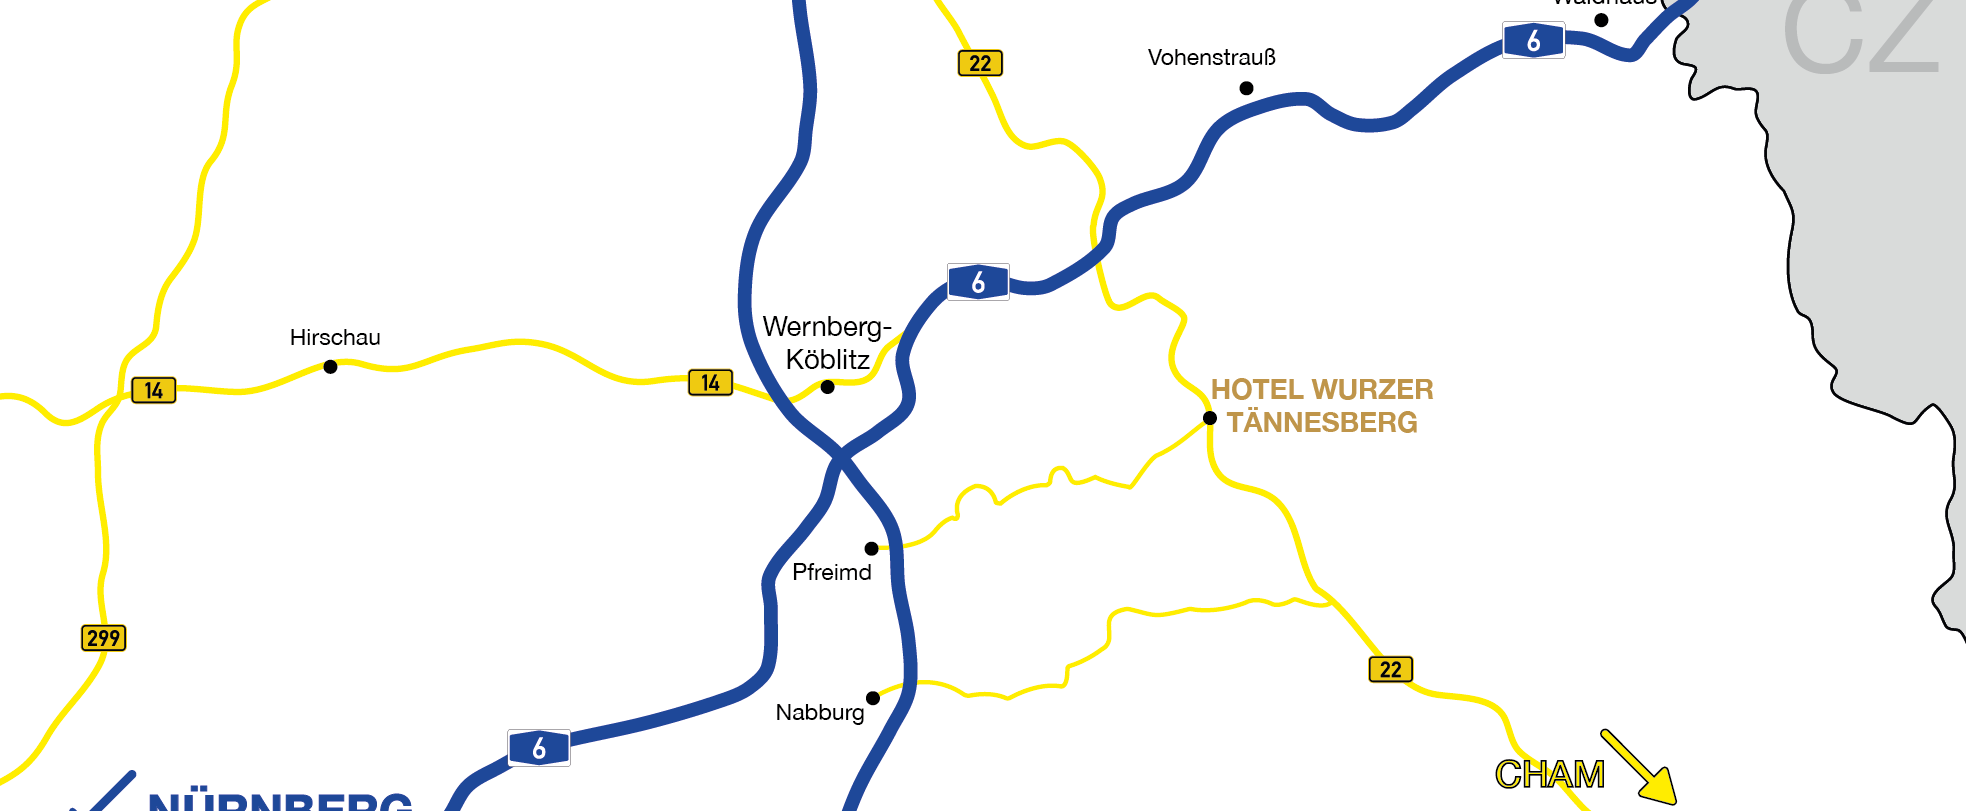 Gaststube Hotel Wurzer